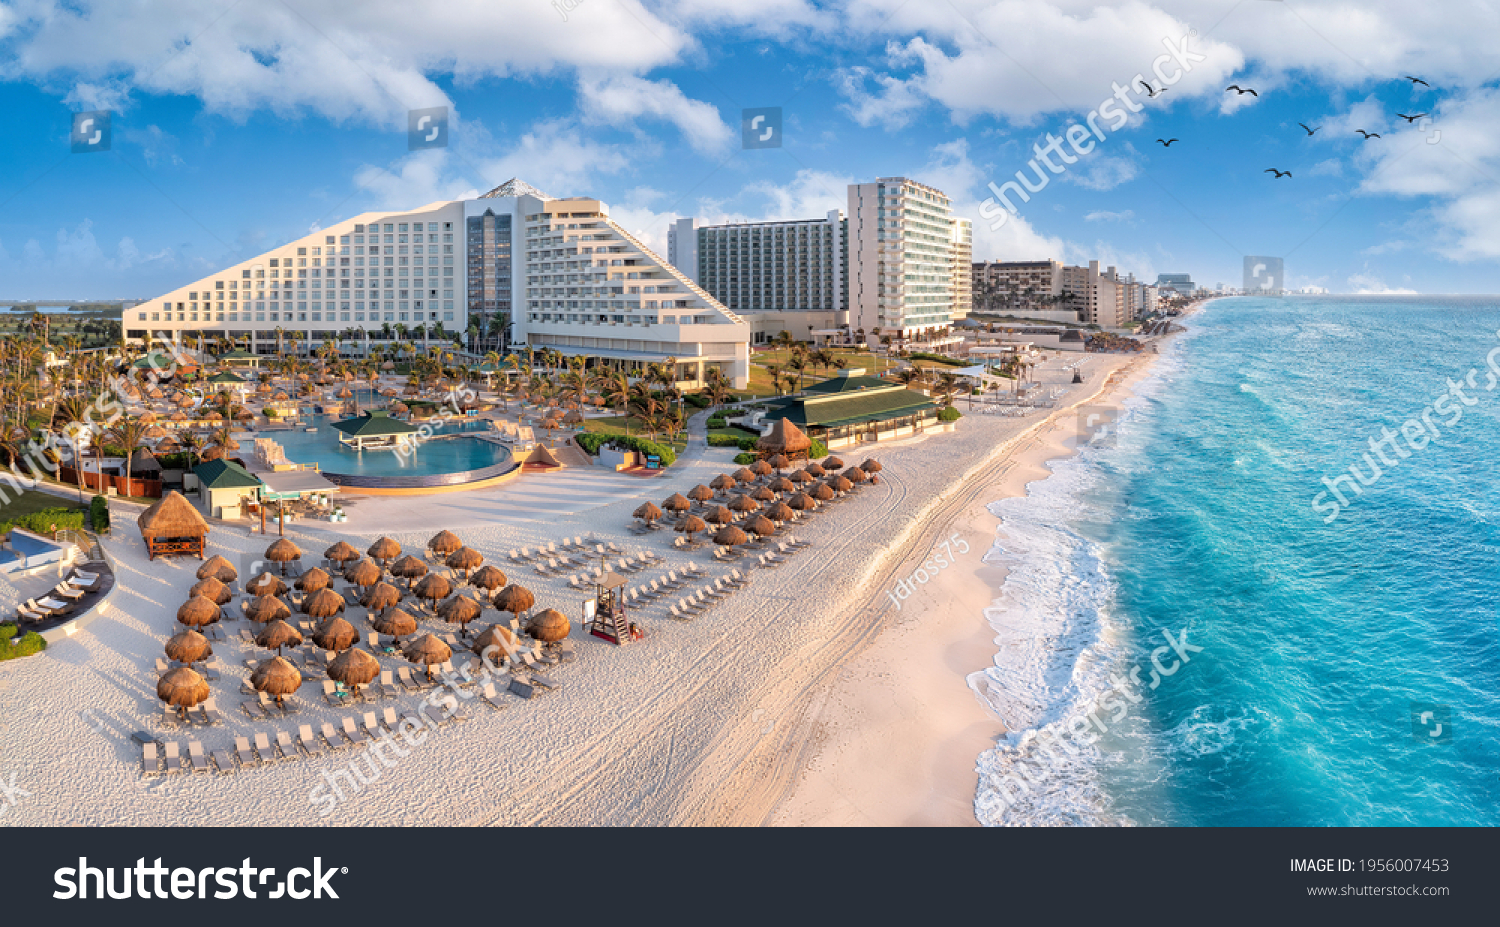 Cancun beach with resorts near blue ocean #1956007453